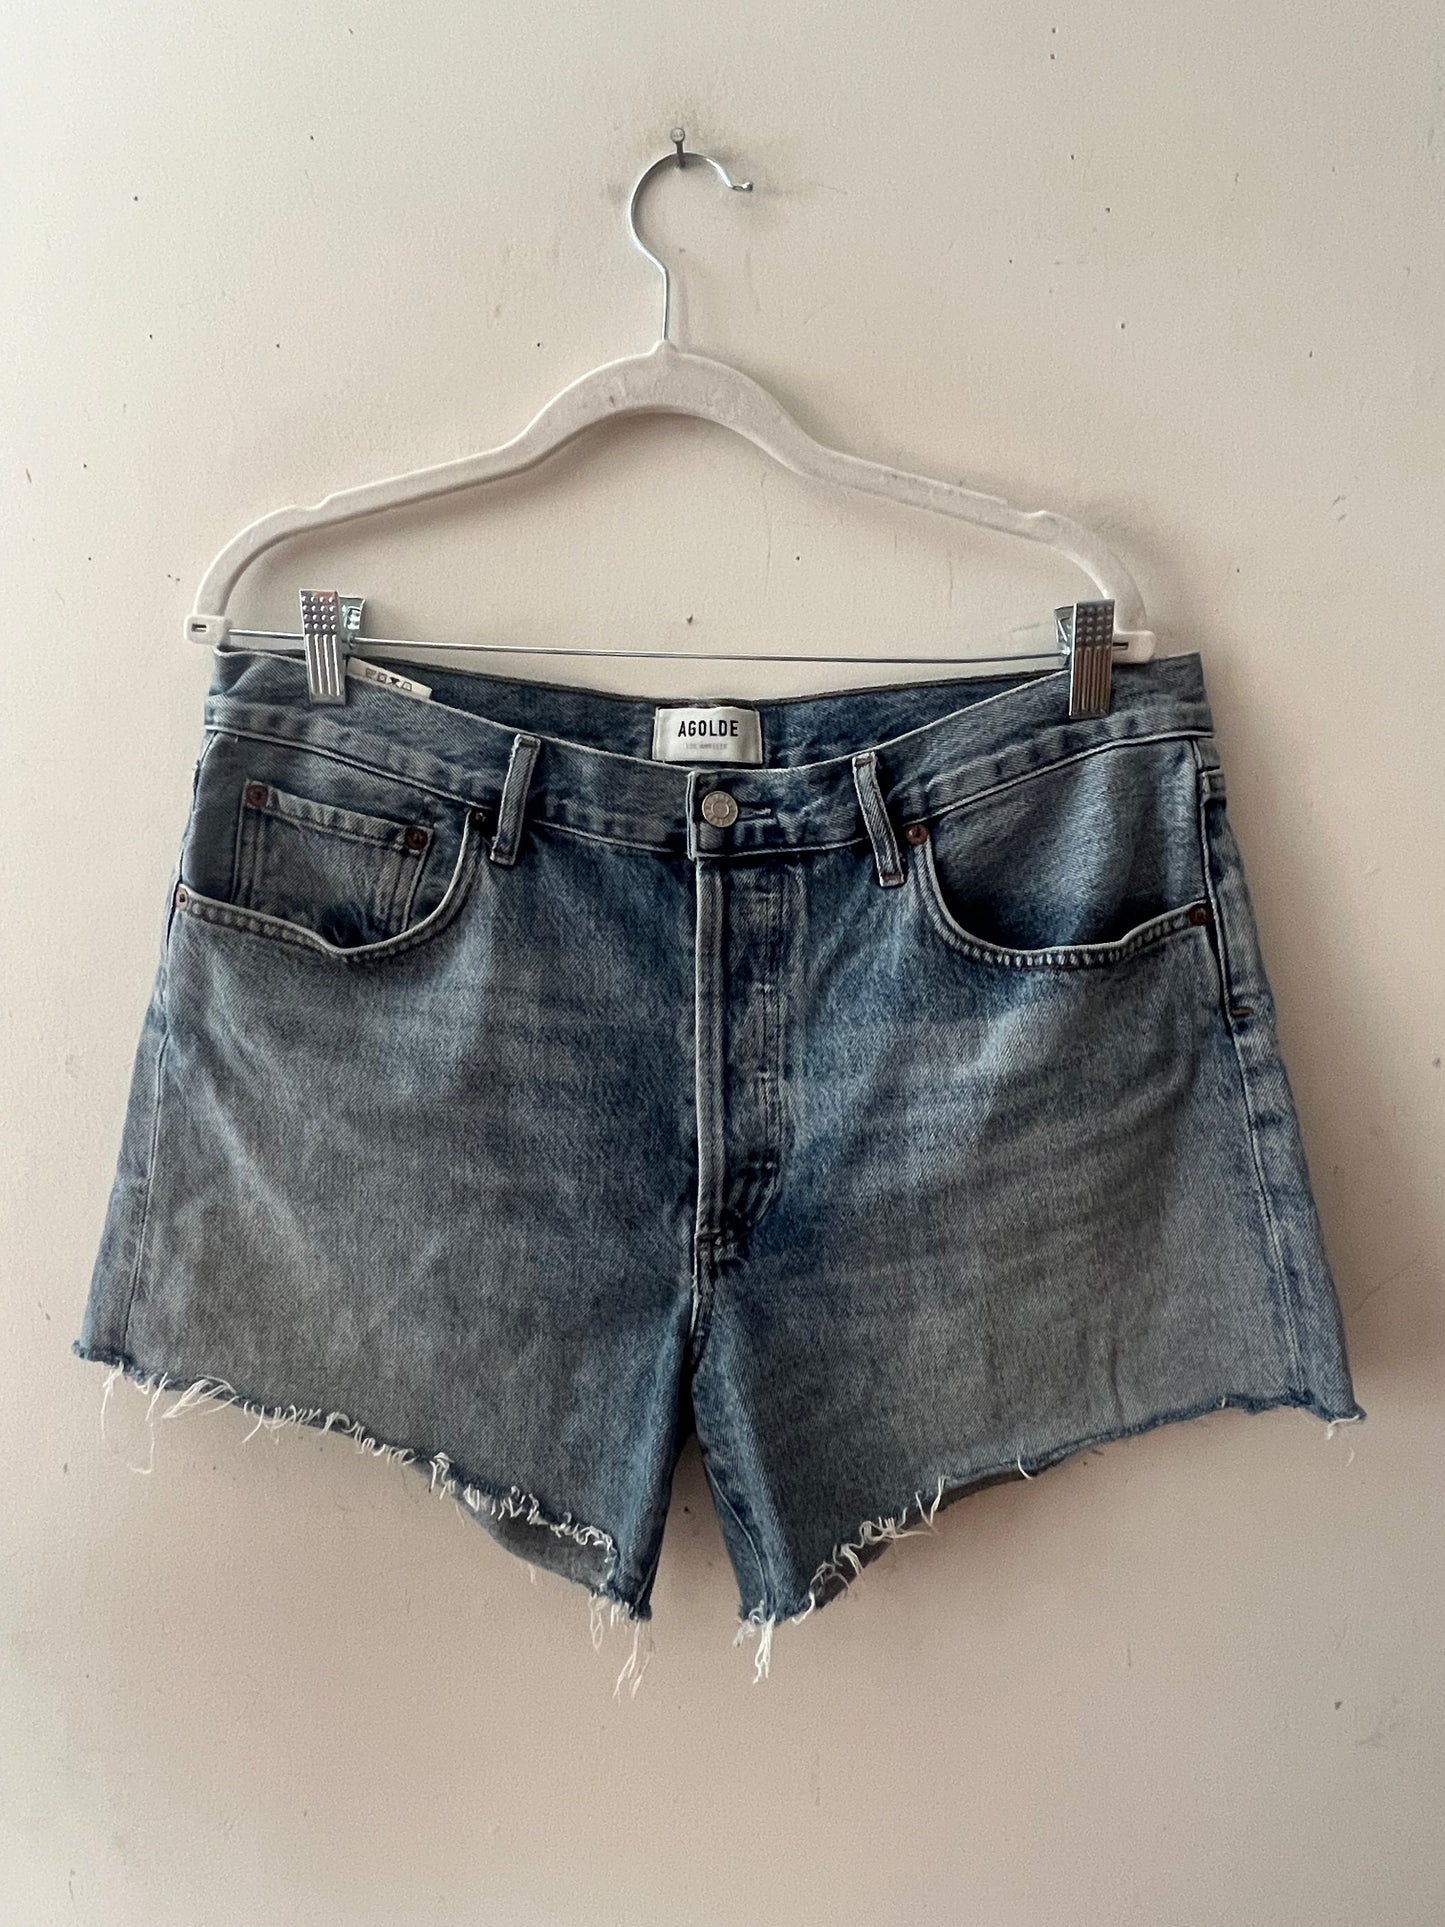 Vintage Washed Jean Shorts